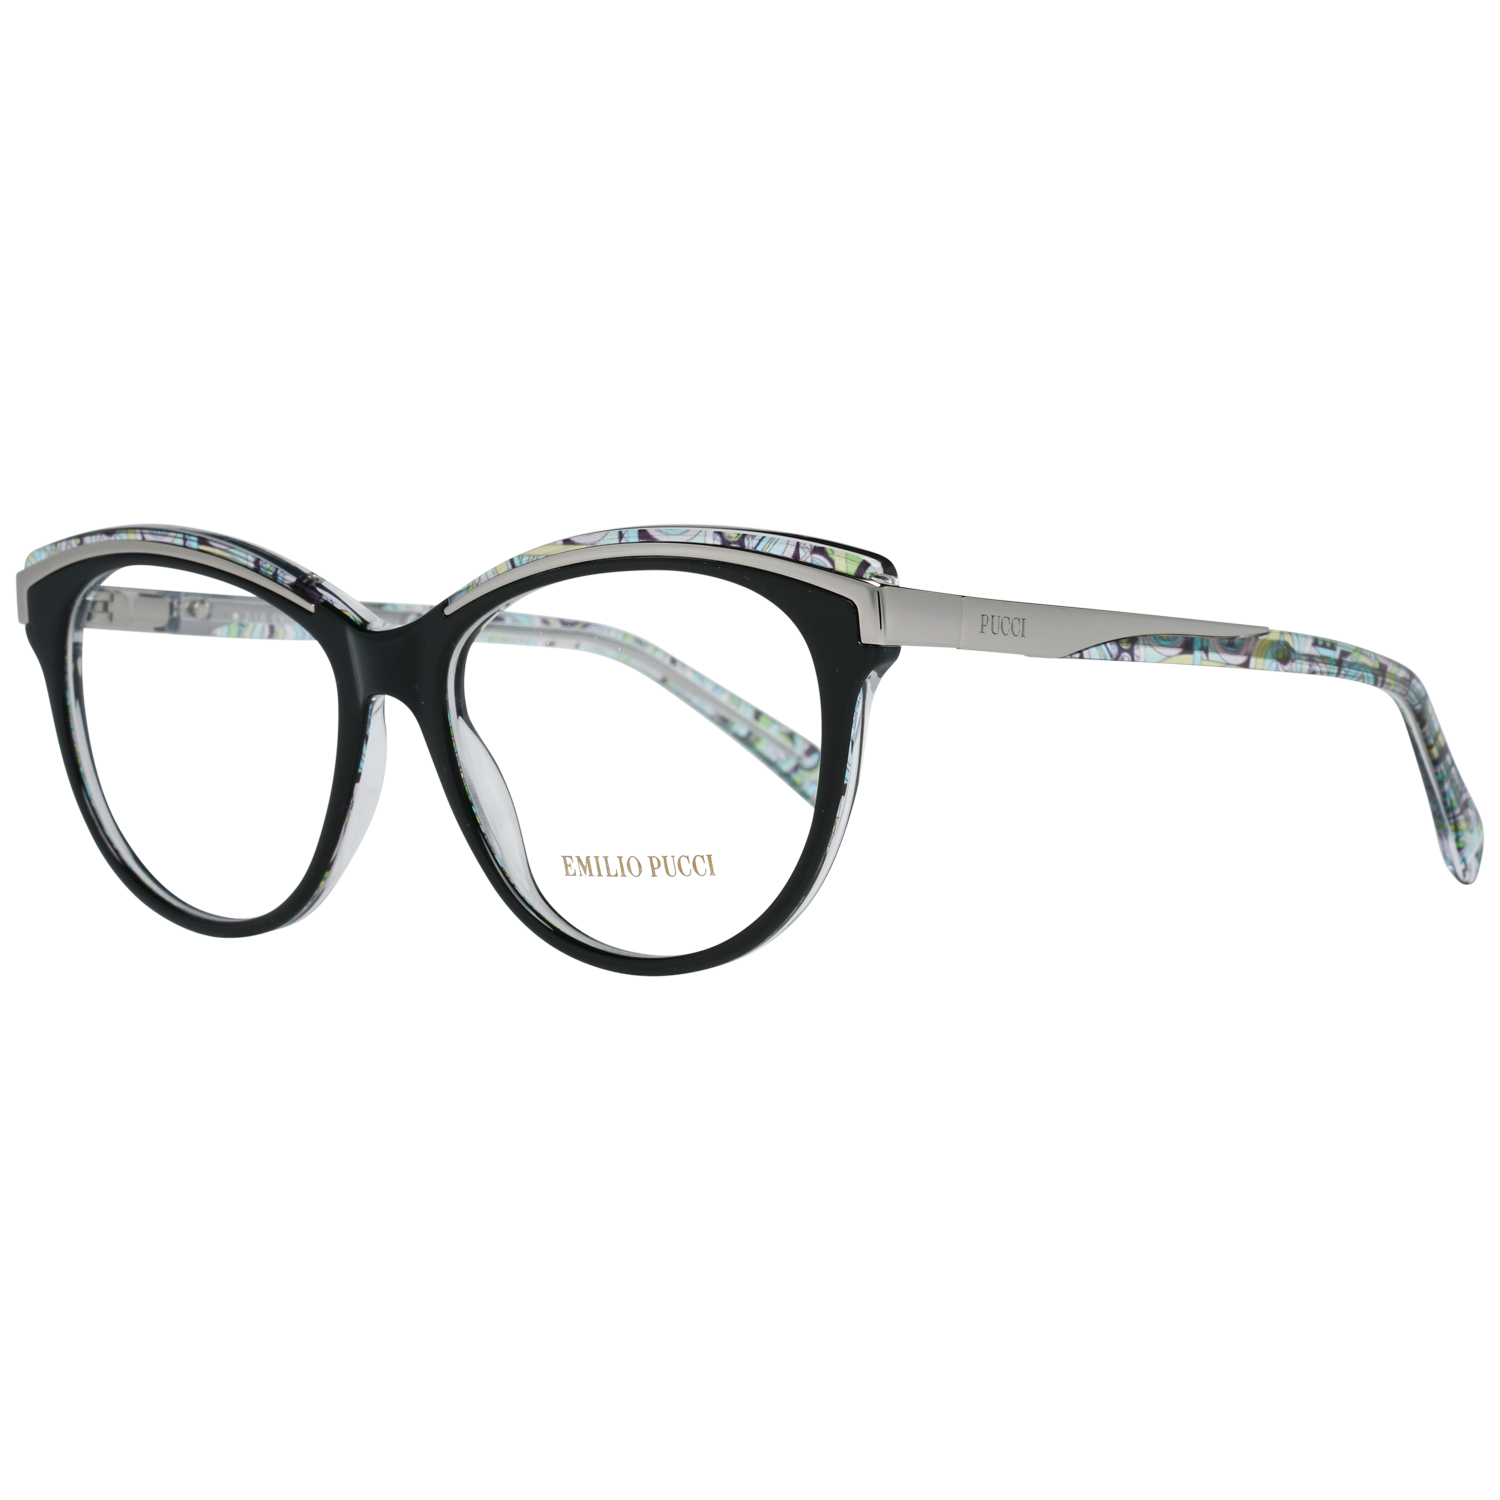 Emilio Pucci Frames Emilio Pucci Optical Frame EP5038 001 53 Eyeglasses Eyewear UK USA Australia 